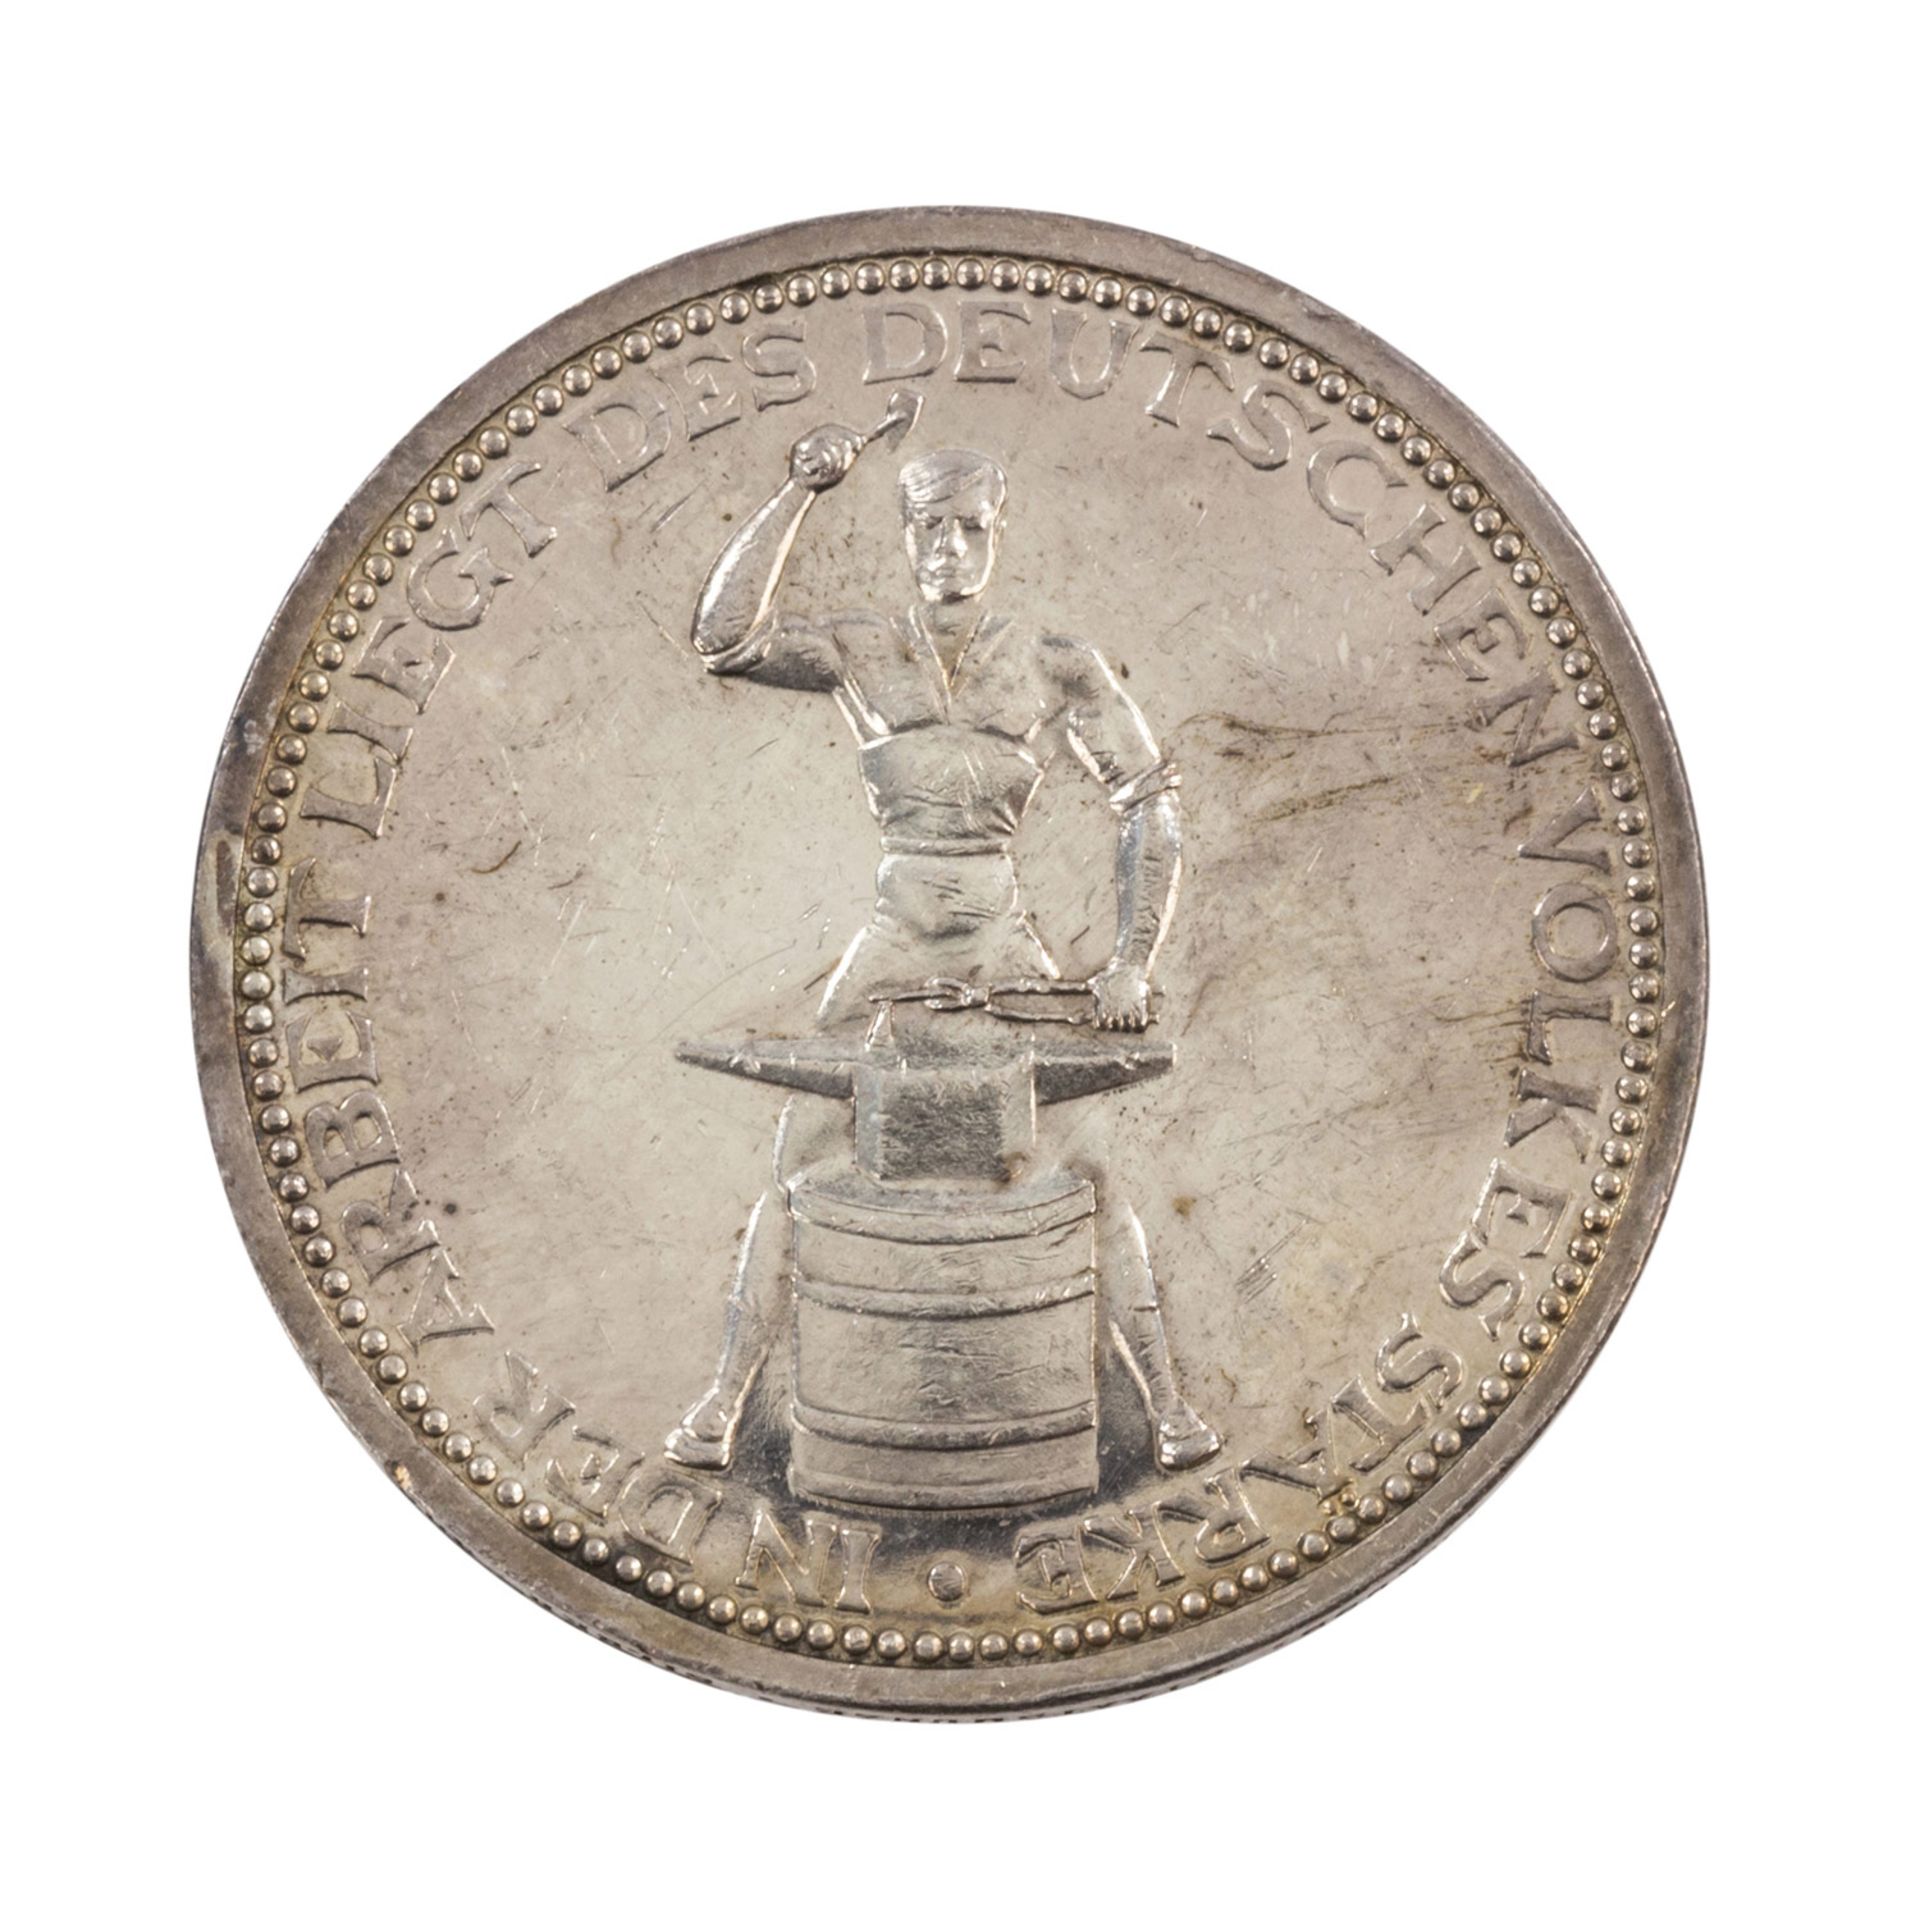 Weimarer Republik - Friedrich Ebert Medaille nach O. Glöckler/Berlin,vz., Kratzer, Silber/.900, - Bild 2 aus 2